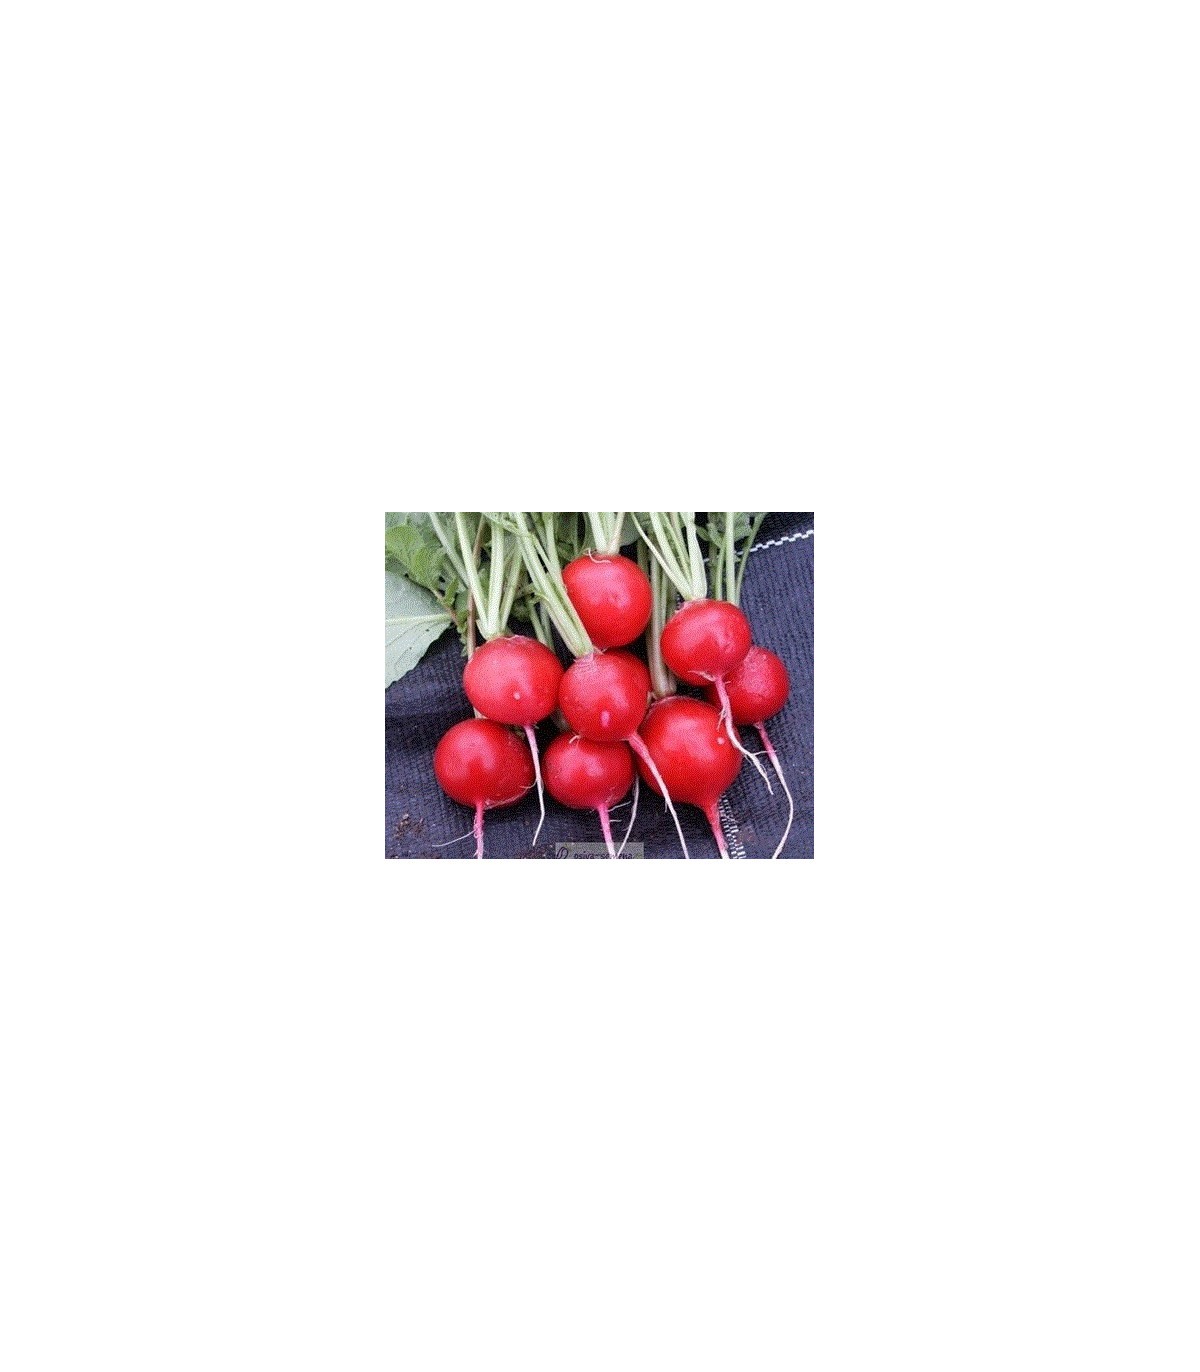 Reďkovka červená guľatá - Carnita - predaj semien reďkovky - 50ks